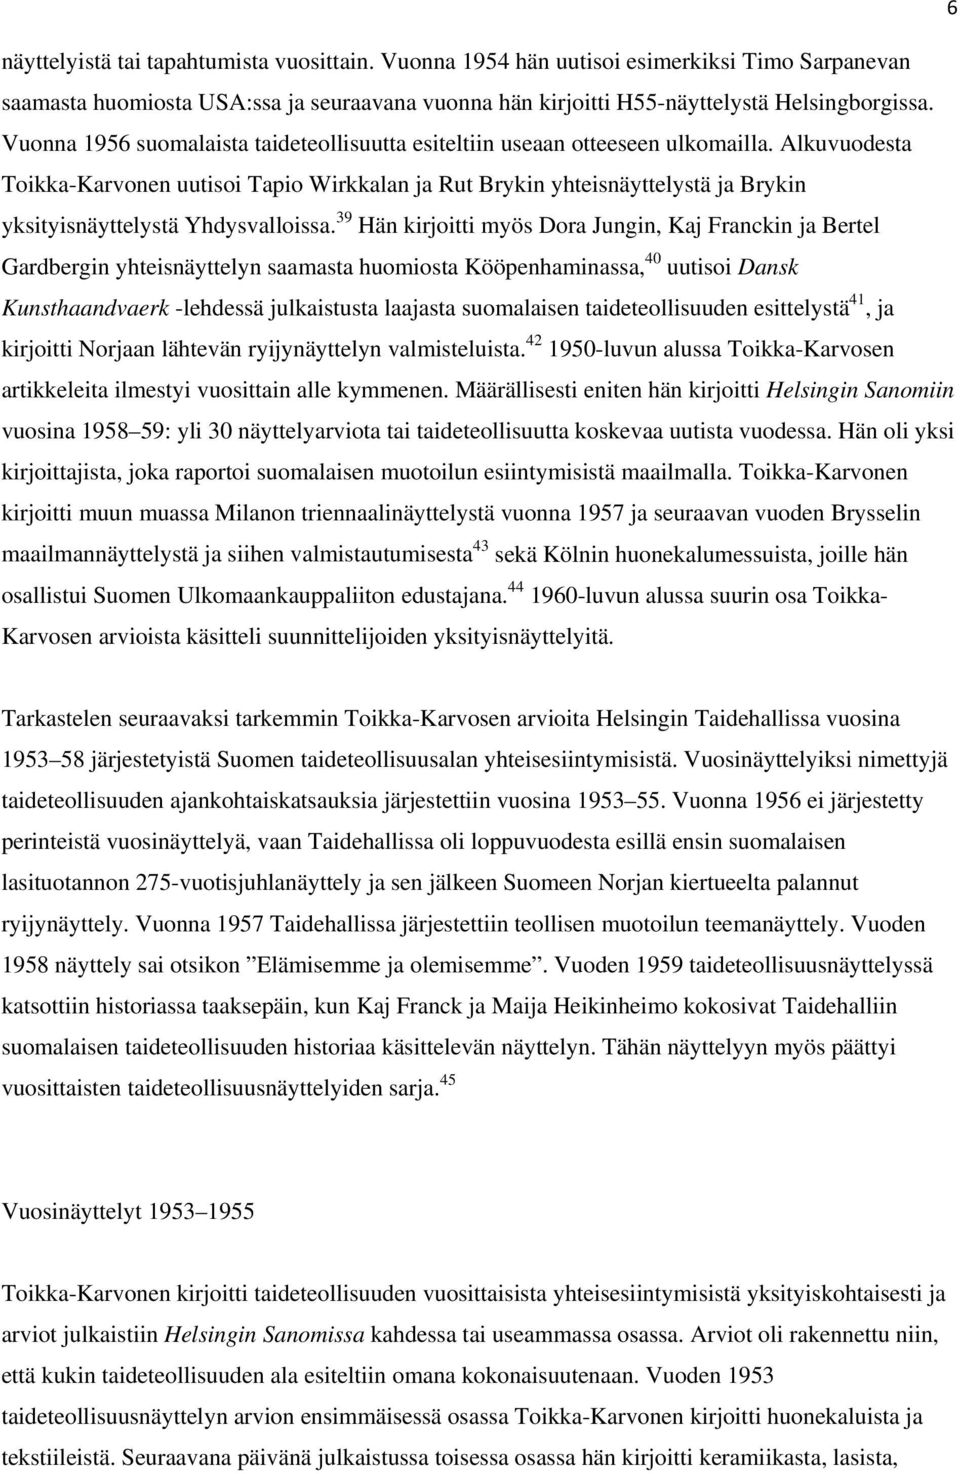 Alkuvuodesta Toikka-Karvonen uutisoi Tapio Wirkkalan ja Rut Brykin yhteisnäyttelystä ja Brykin yksityisnäyttelystä Yhdysvalloissa.